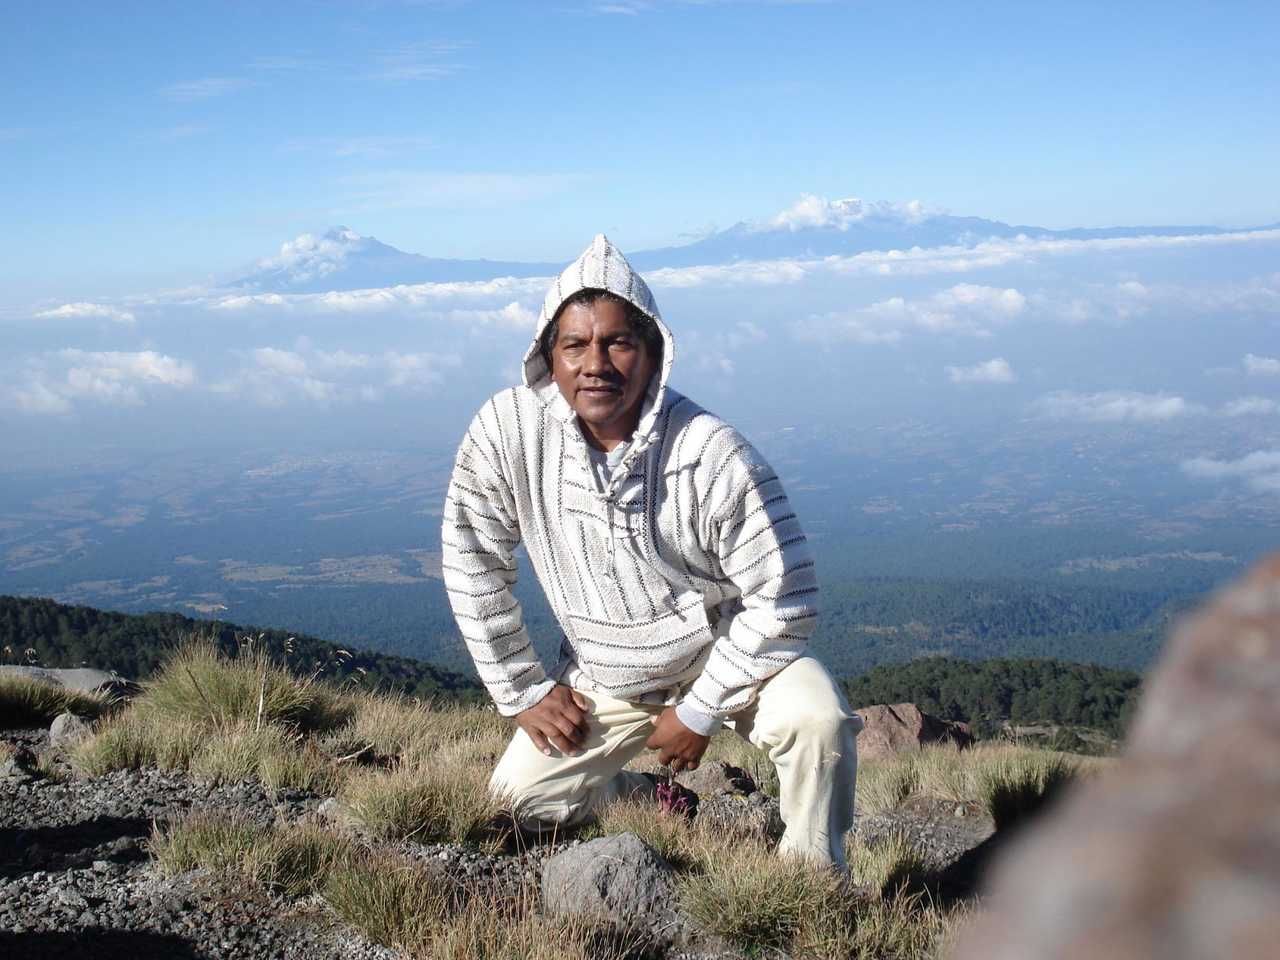 mexicain devant une vue panoramique en altitude au Mexique